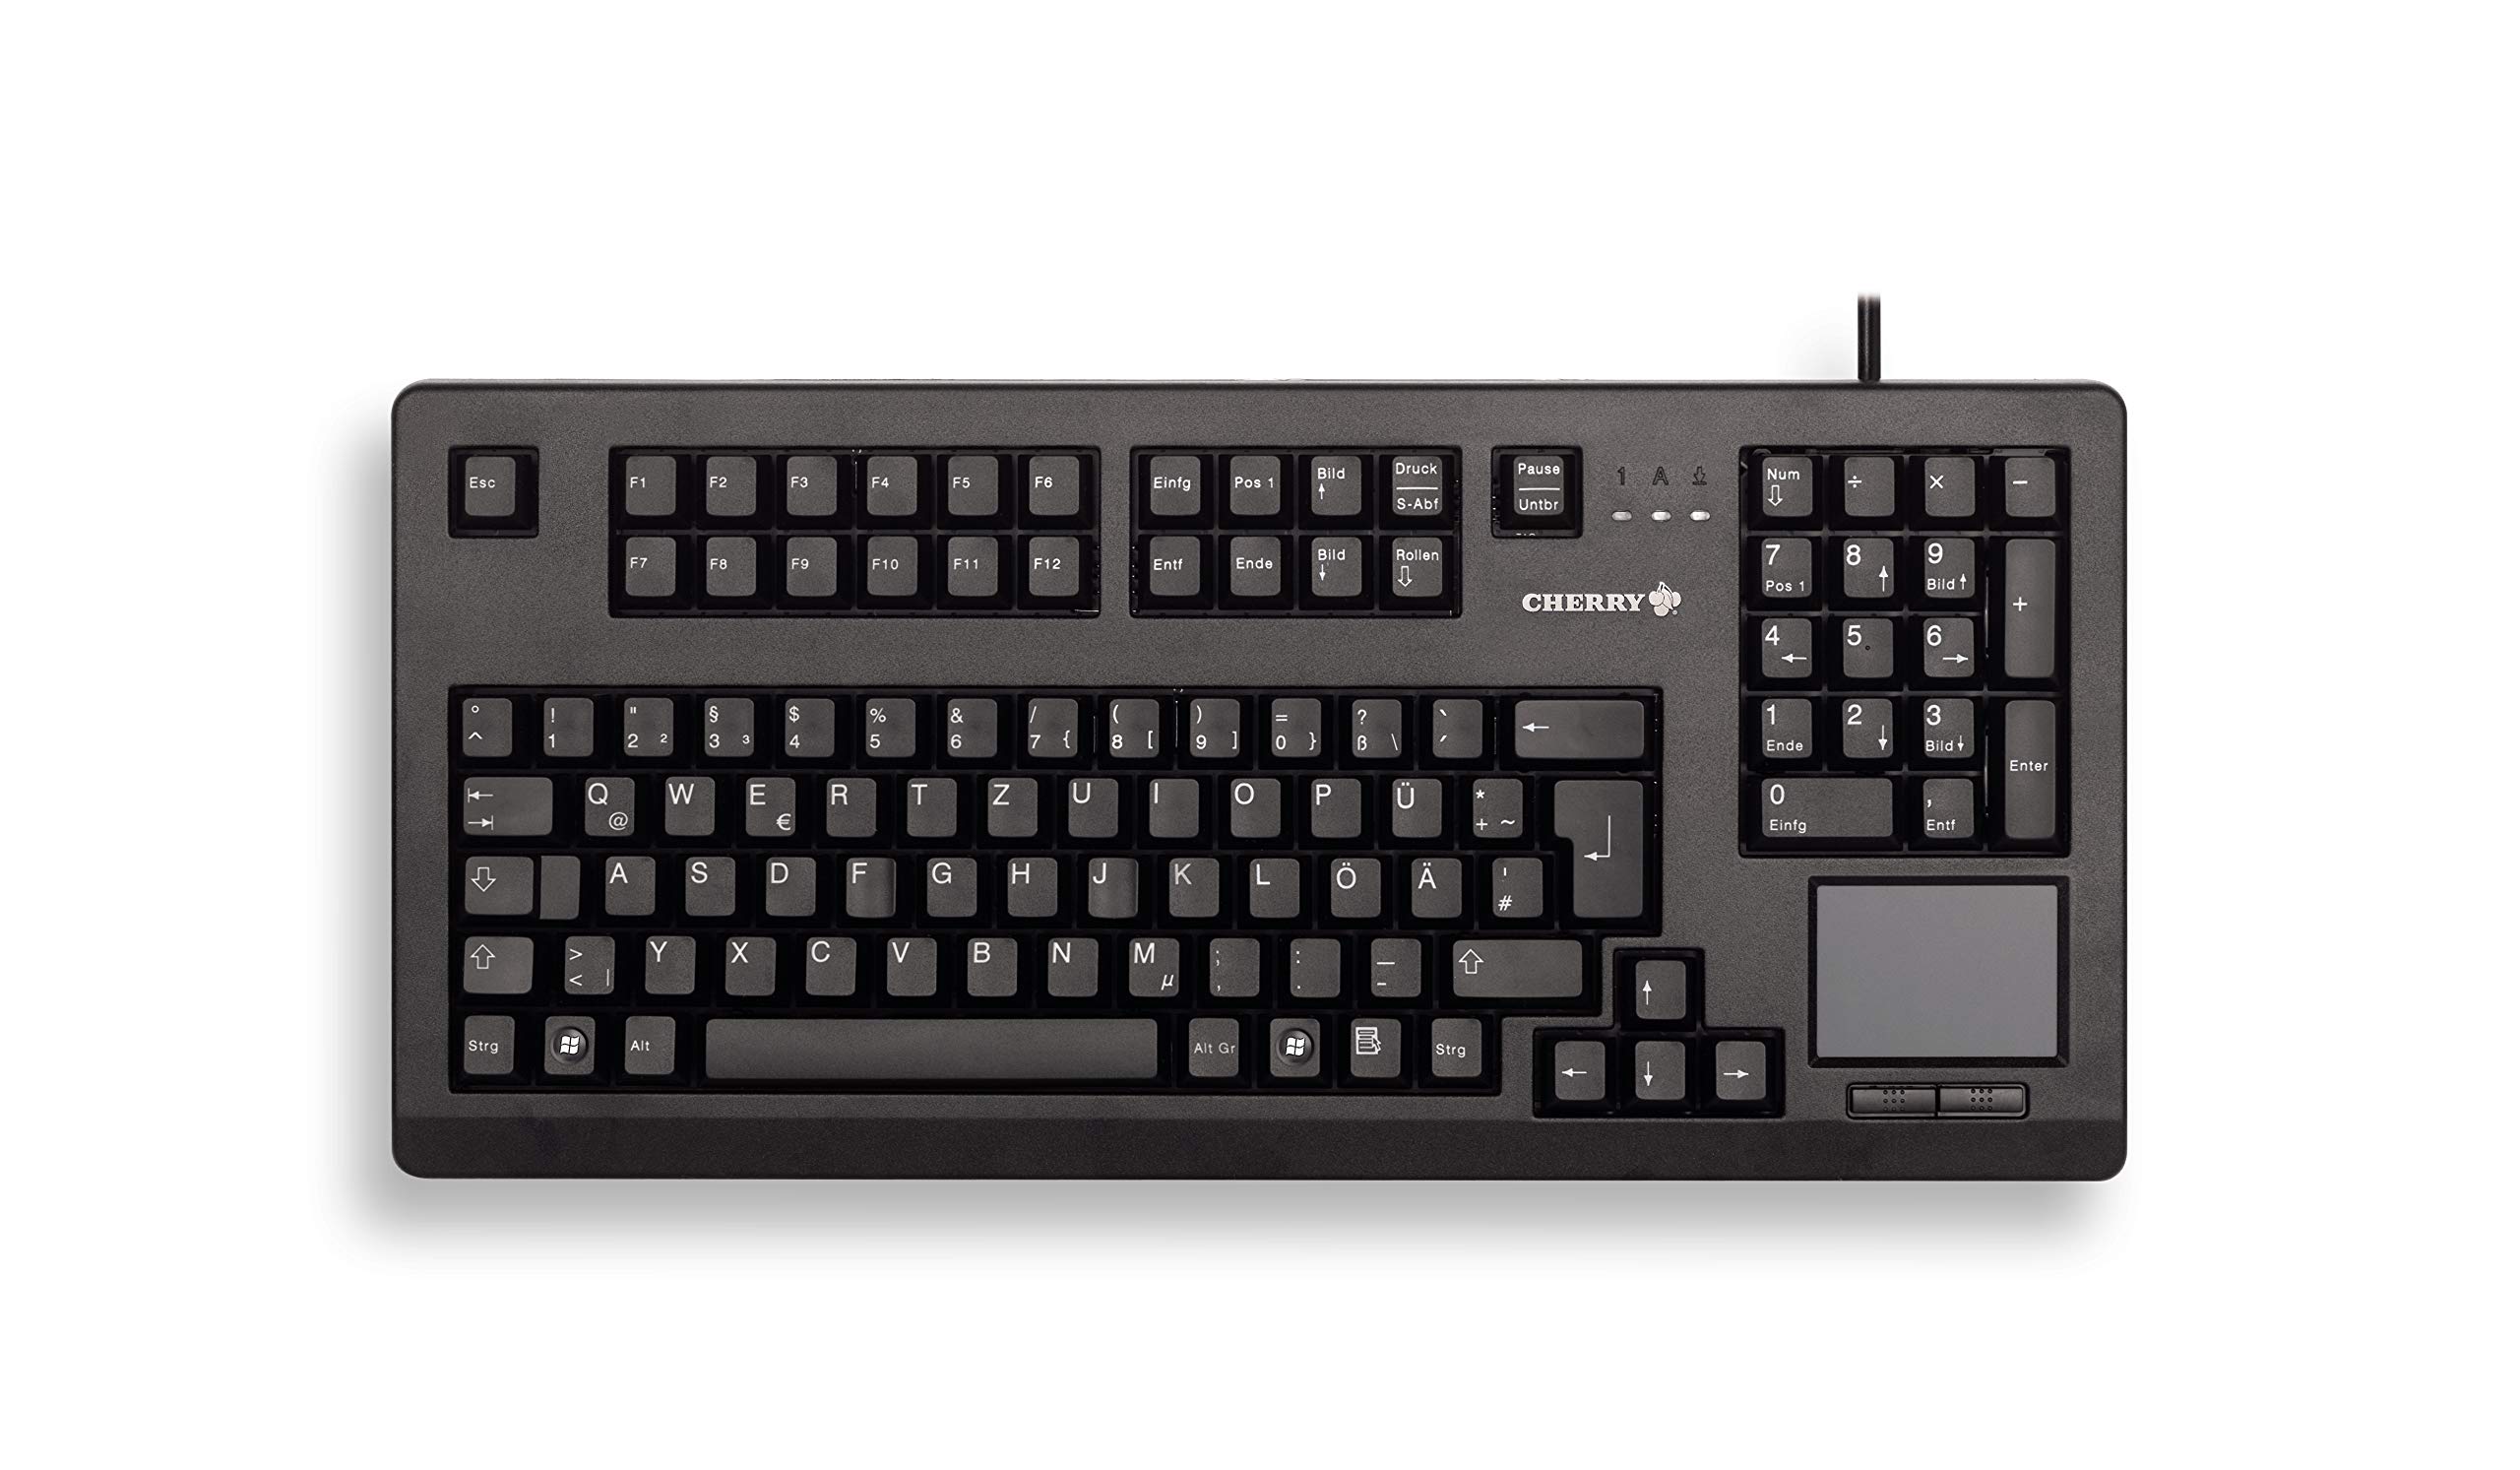 CHERRY TouchBoard G80-11900, Deutsches Layout, QWERTZ Tastatur, kabelgebundene Tastatur, mechanische Tastatur, ML Mechanik, integriertes Touchpad, platzsparend, ergonomisch, schwarz